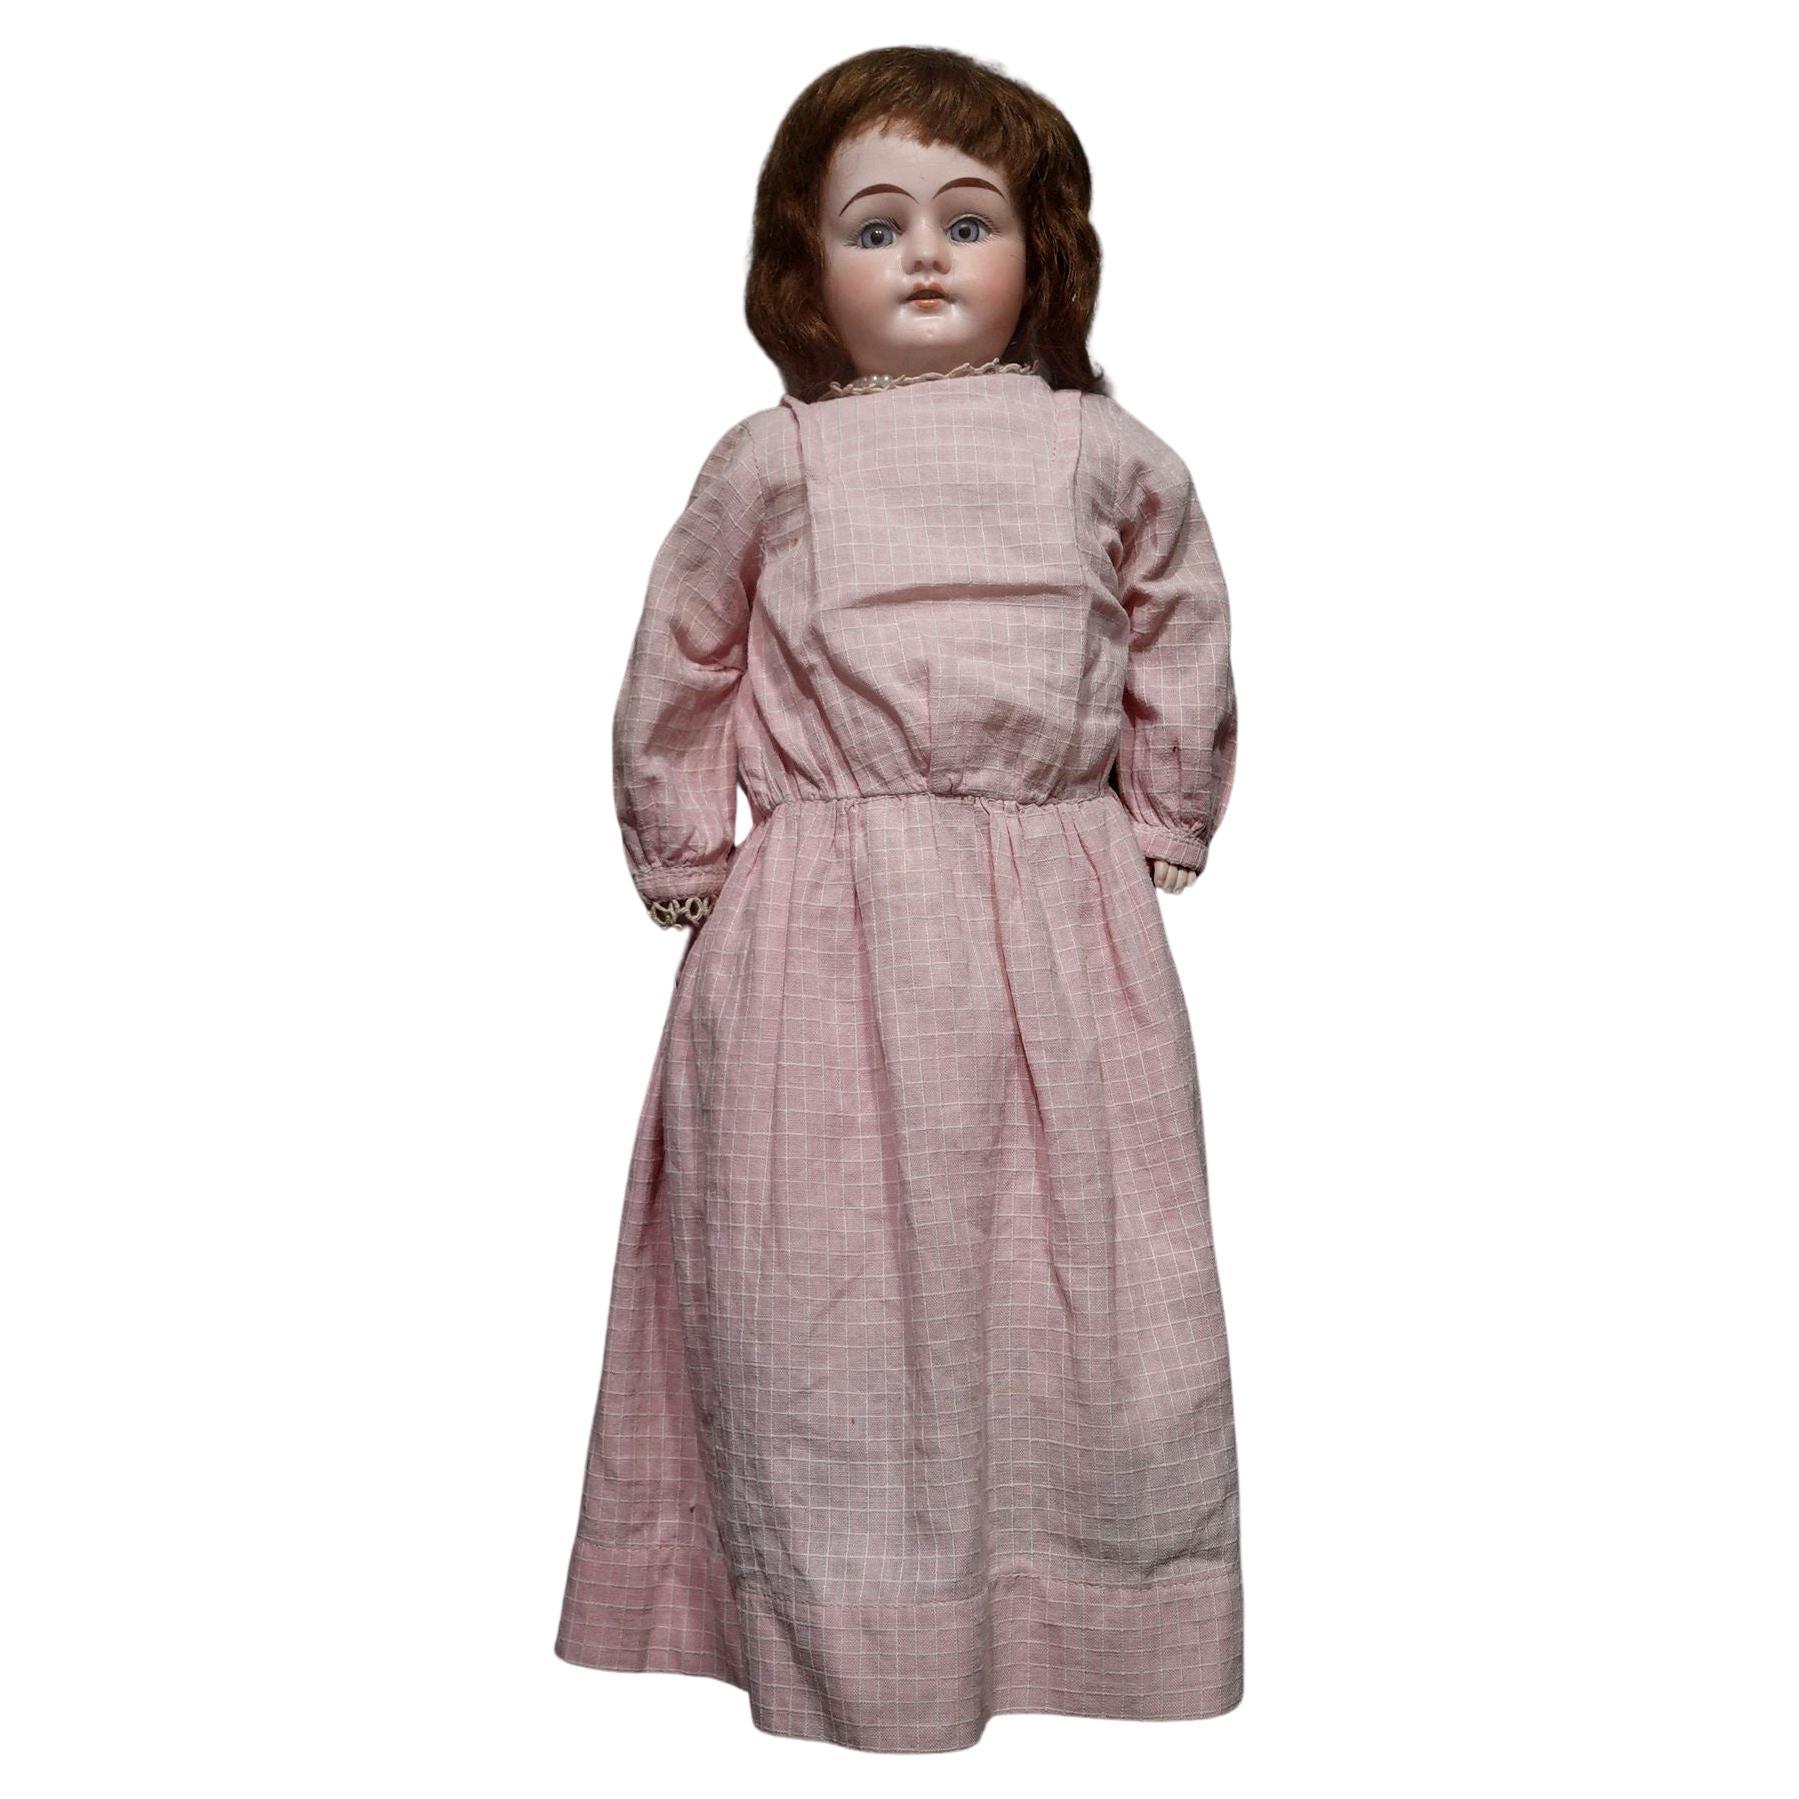 Ancienne poupée allemande bisque Doll A & M Armand Marseille, Ric#006